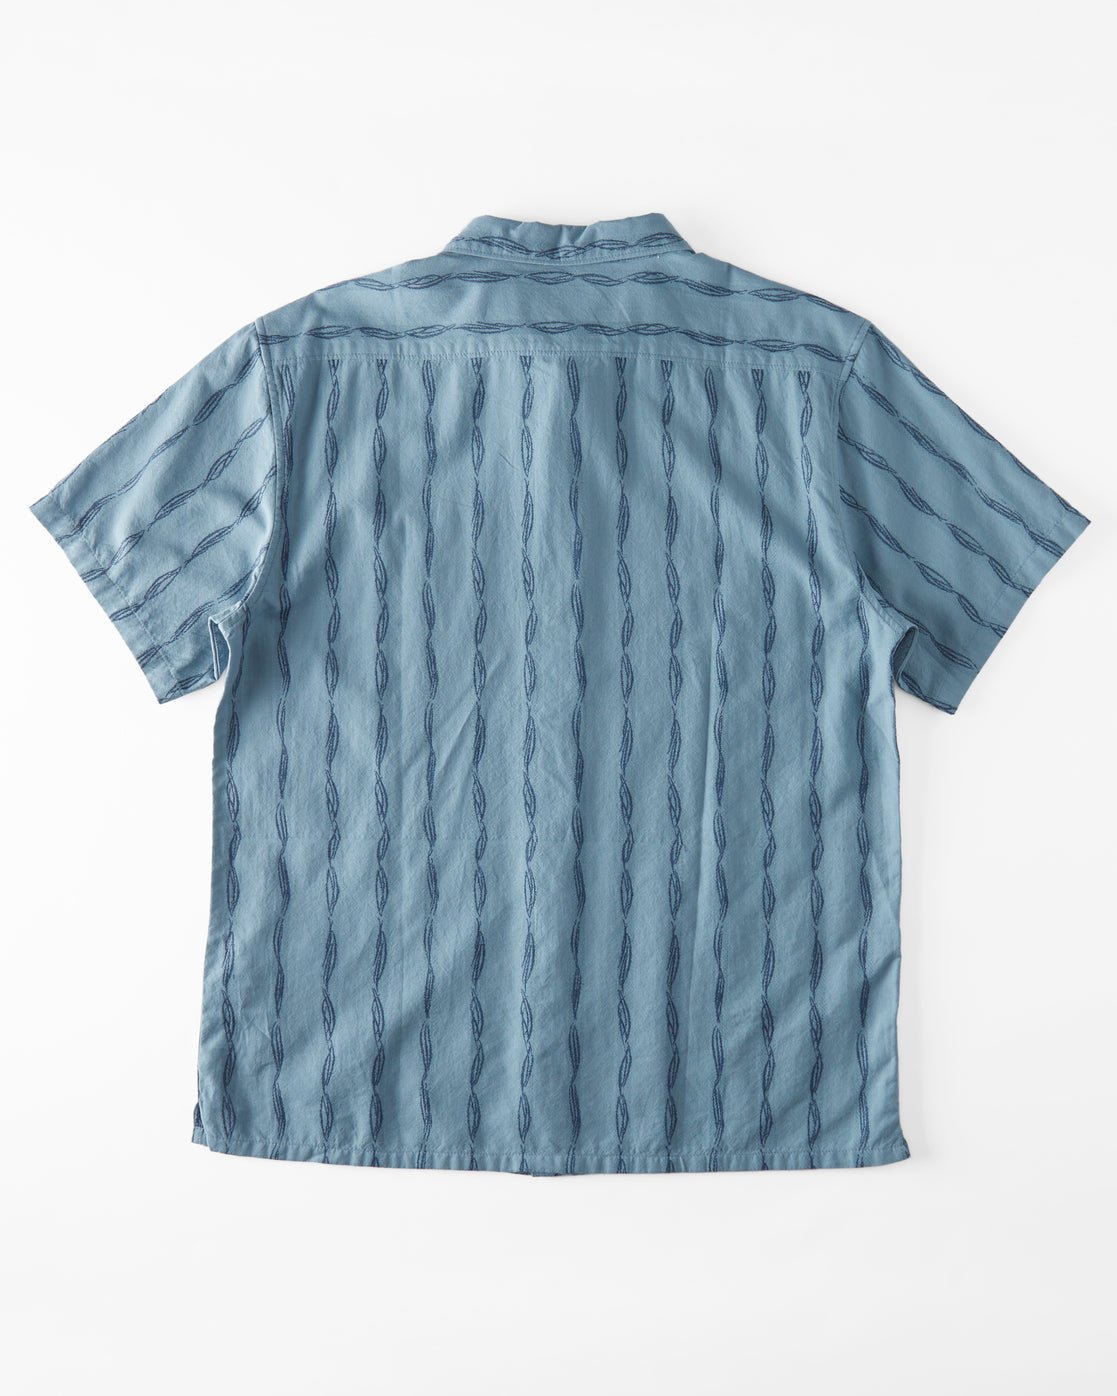 Billabong Sundays Jacquard Short Sleeve Shirt - Washed Blue